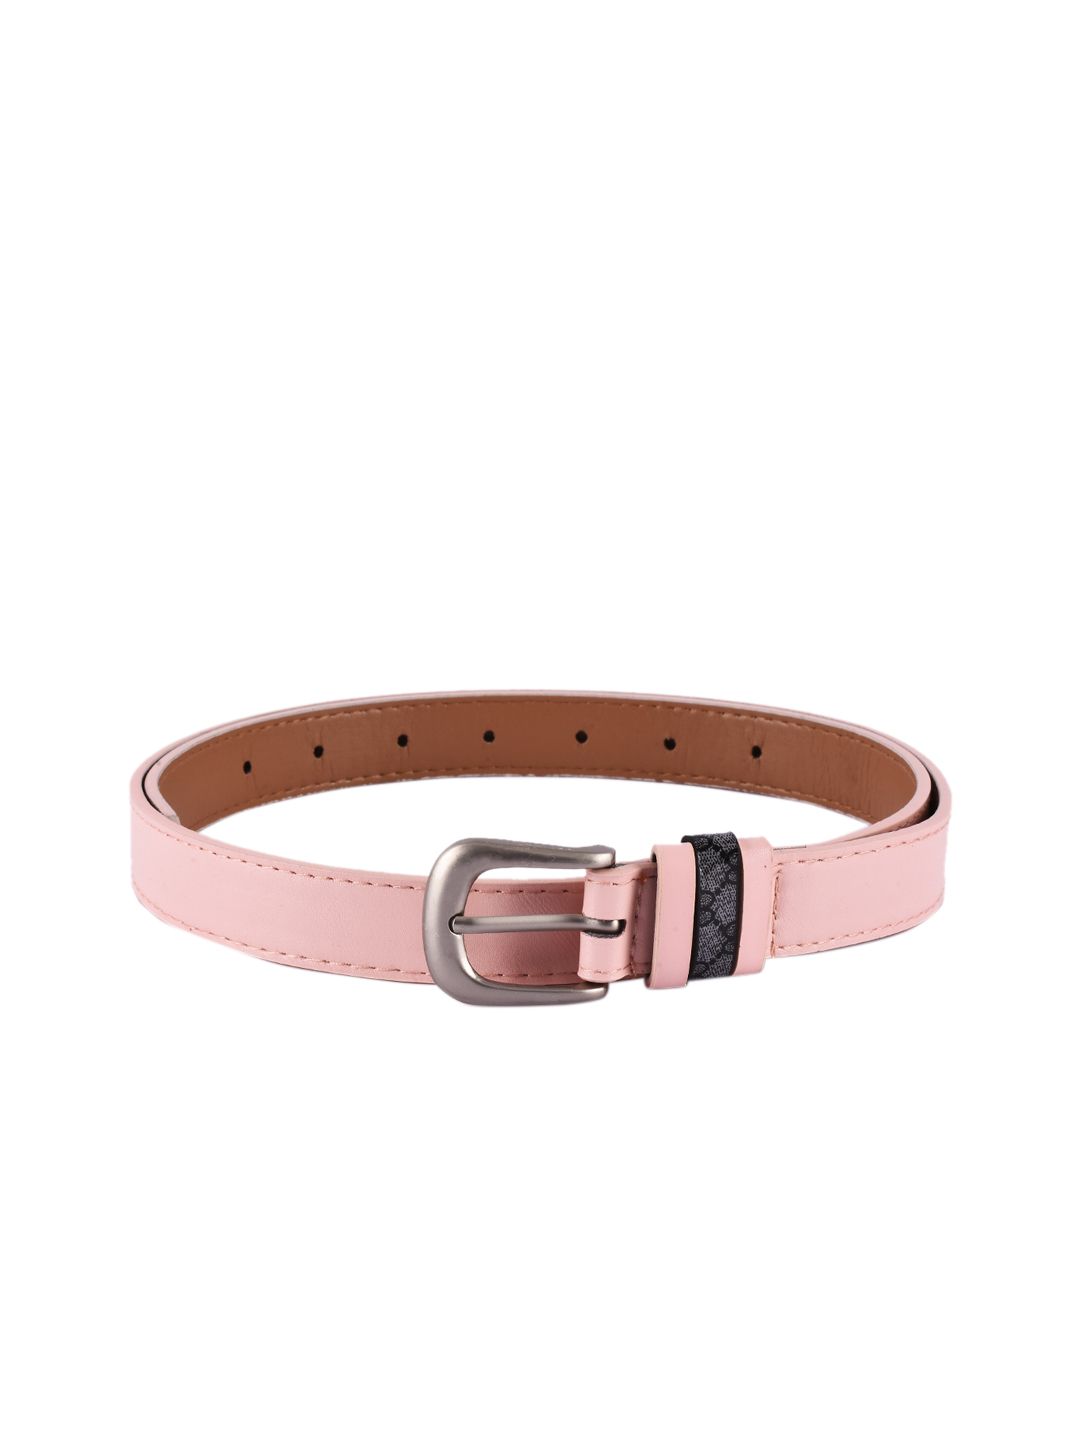 BuckleUp Women Pink Solid Belt Price in India